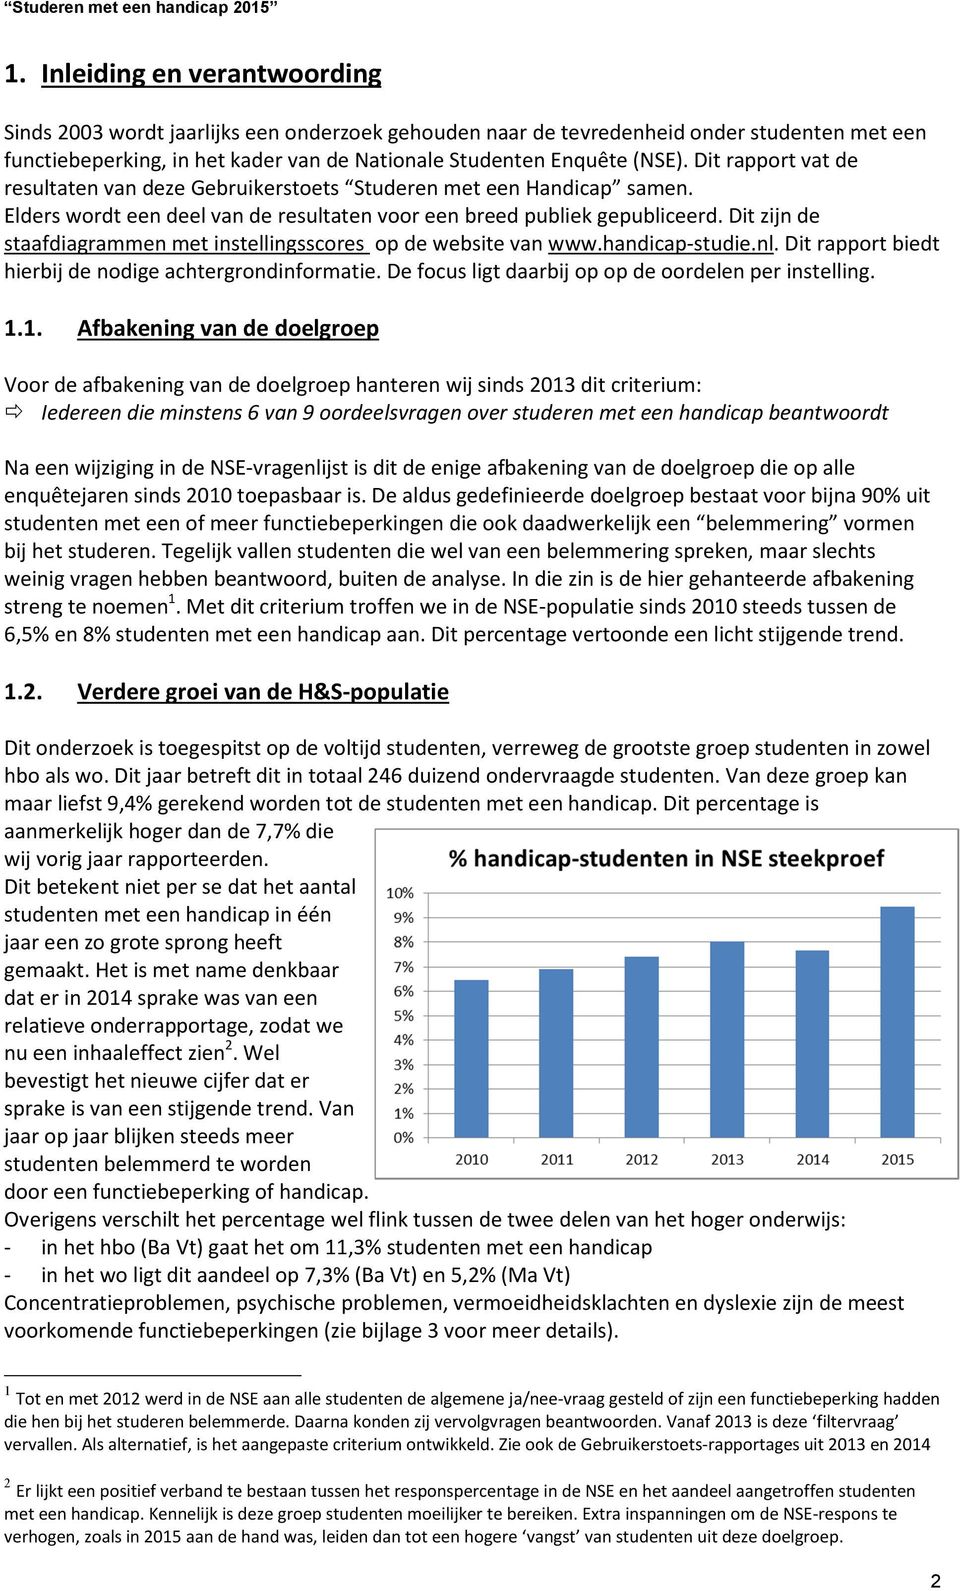 Dit zijn de staafdiagrammen met instellingsscores op de website van www.handicap-studie.nl. Dit rapport biedt hierbij de nodige achtergrondinformatie.